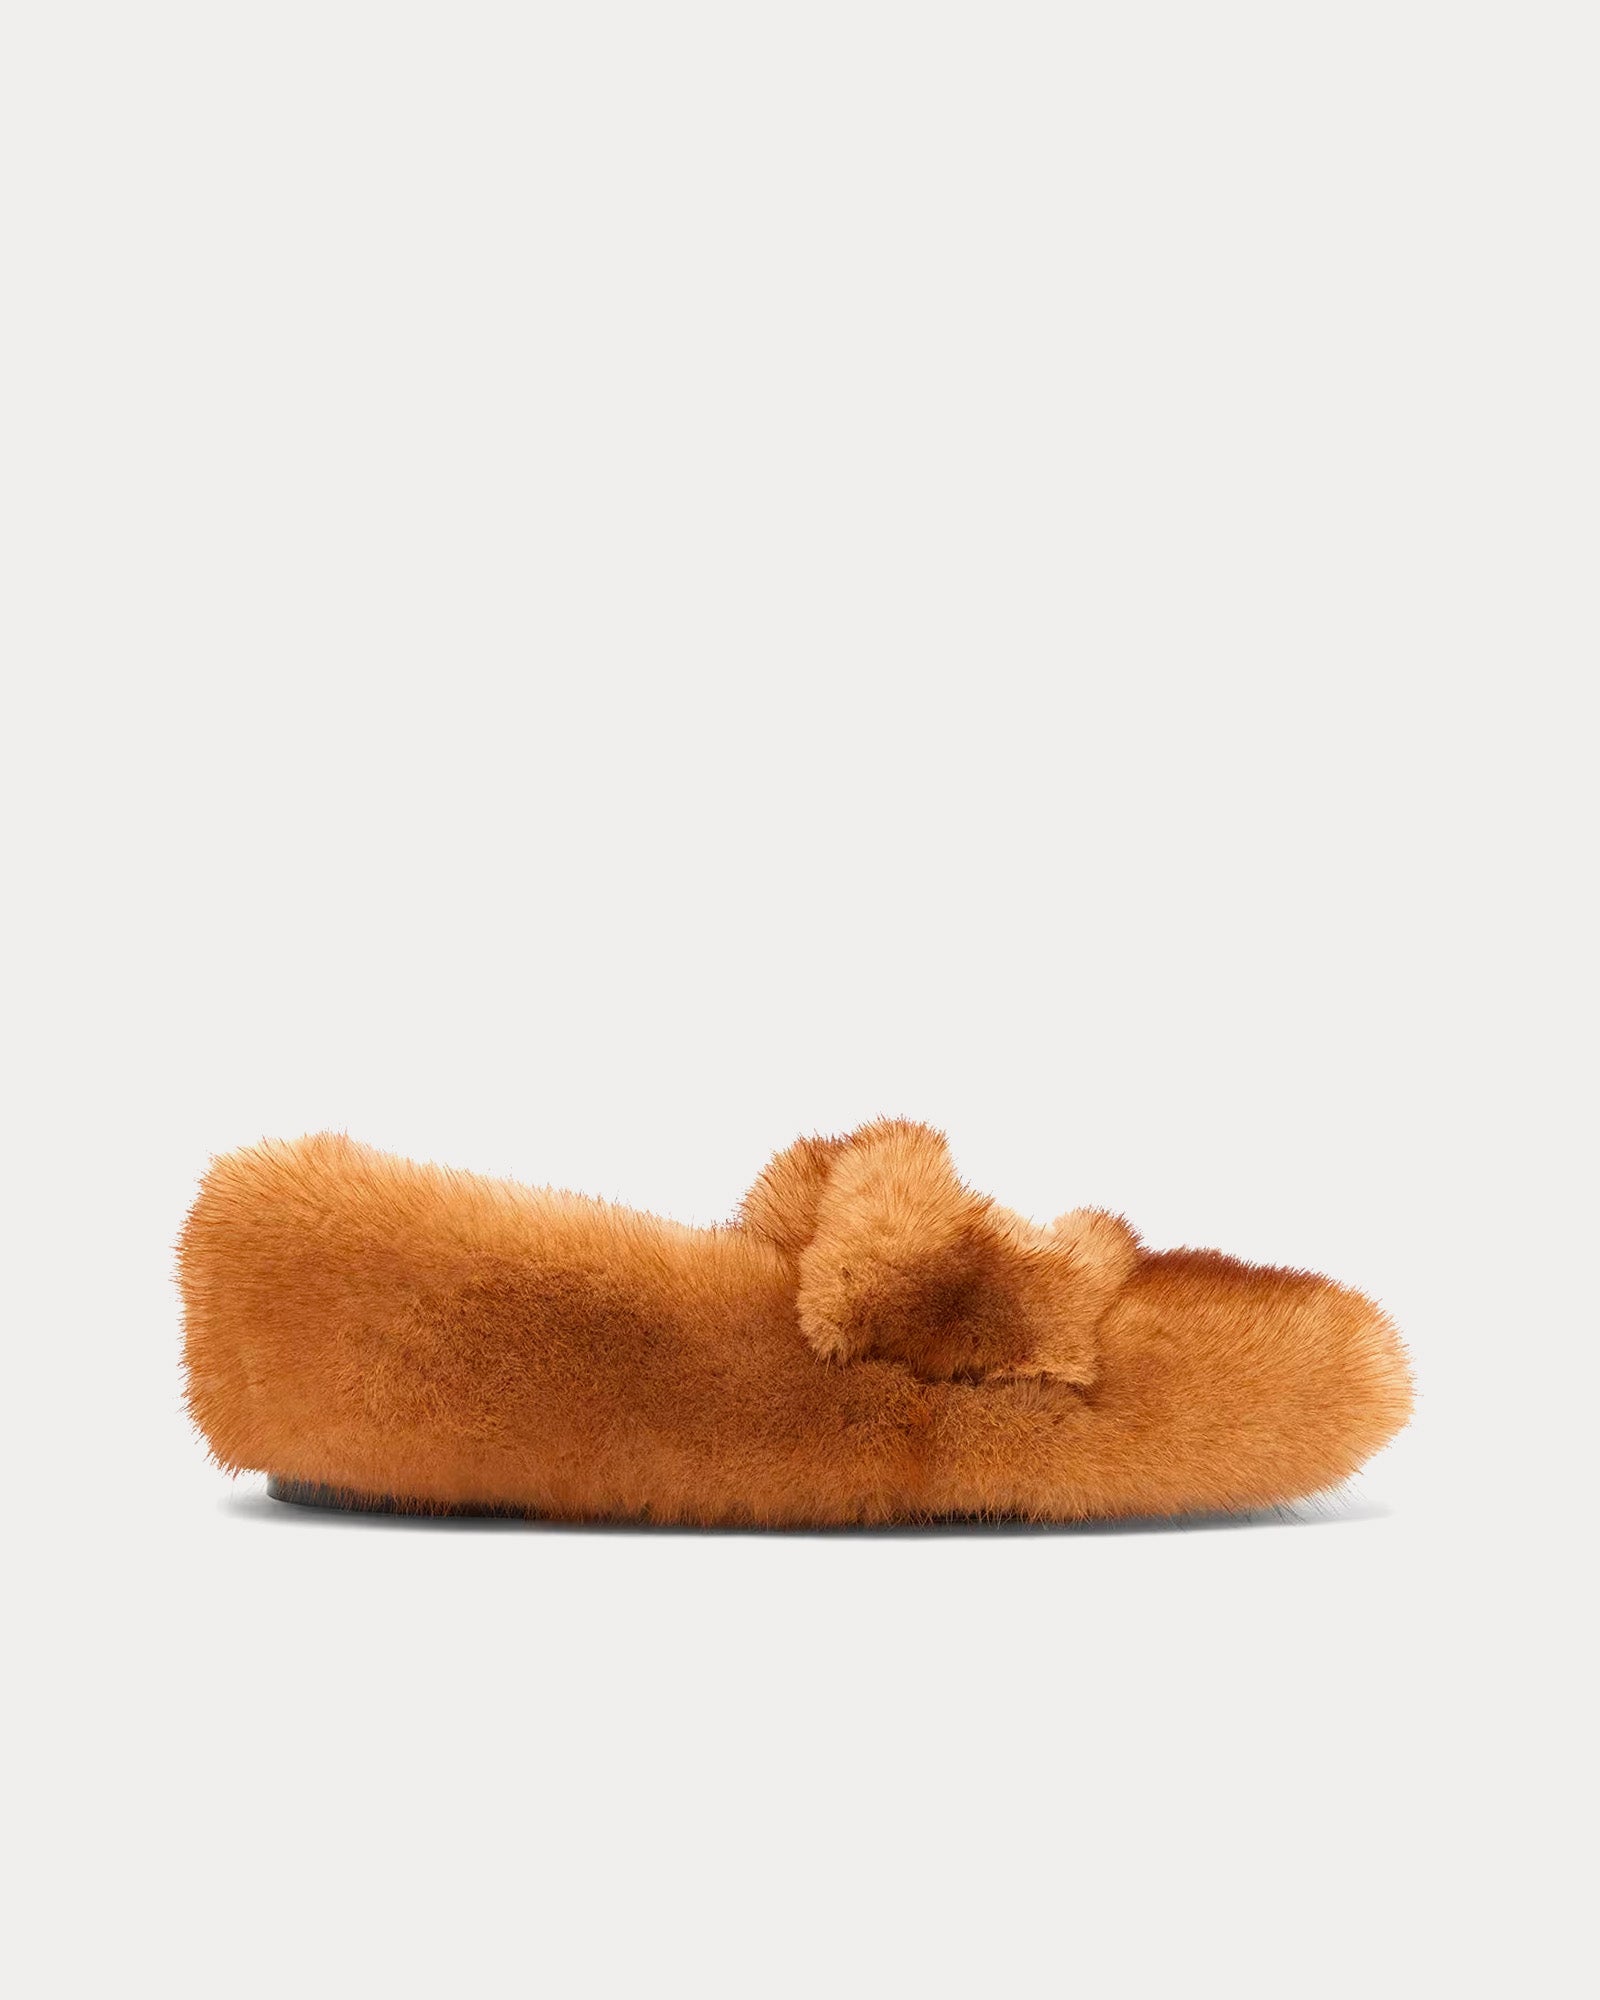 Fendi - Baguette Mink Beige Loafers